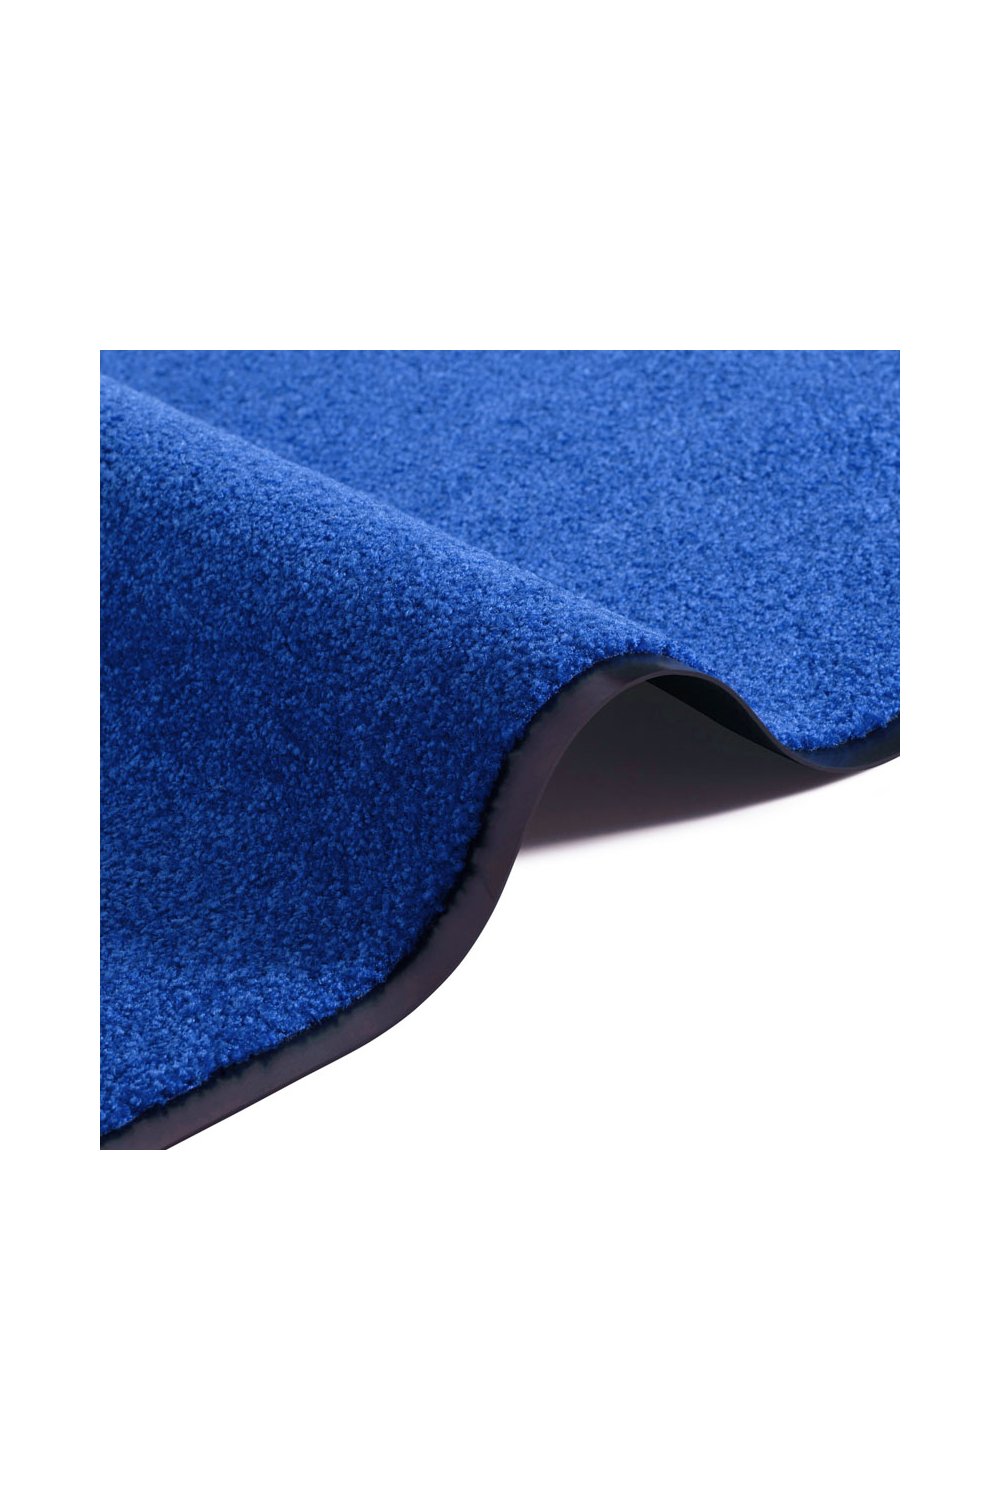 Mata Wejściowa Niebieska Wash & Clean 103837 Blue